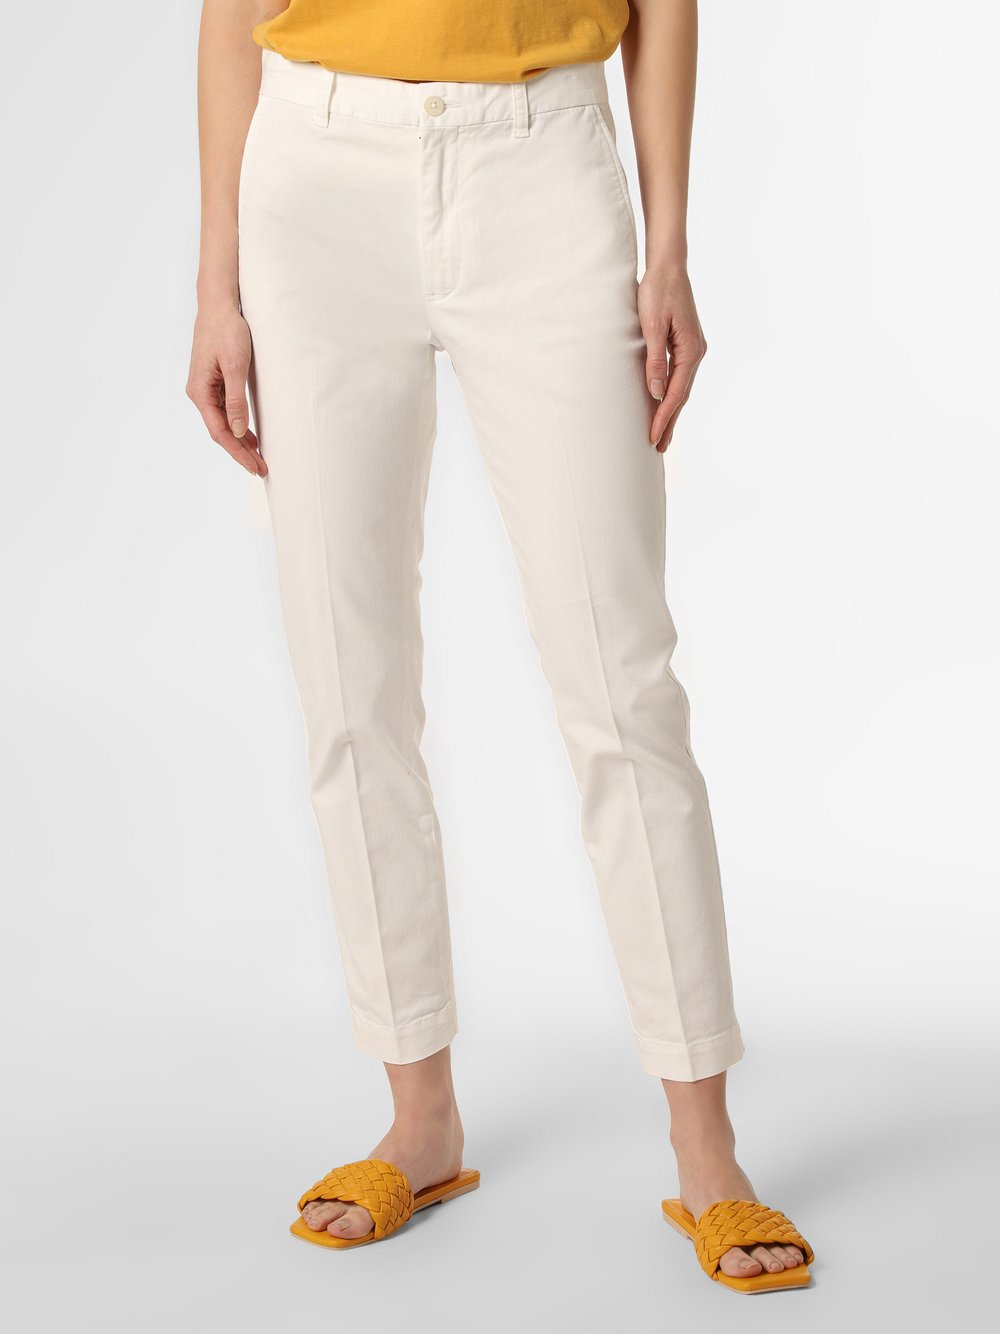 Polo Ralph Lauren - Spodnie damskie, biały